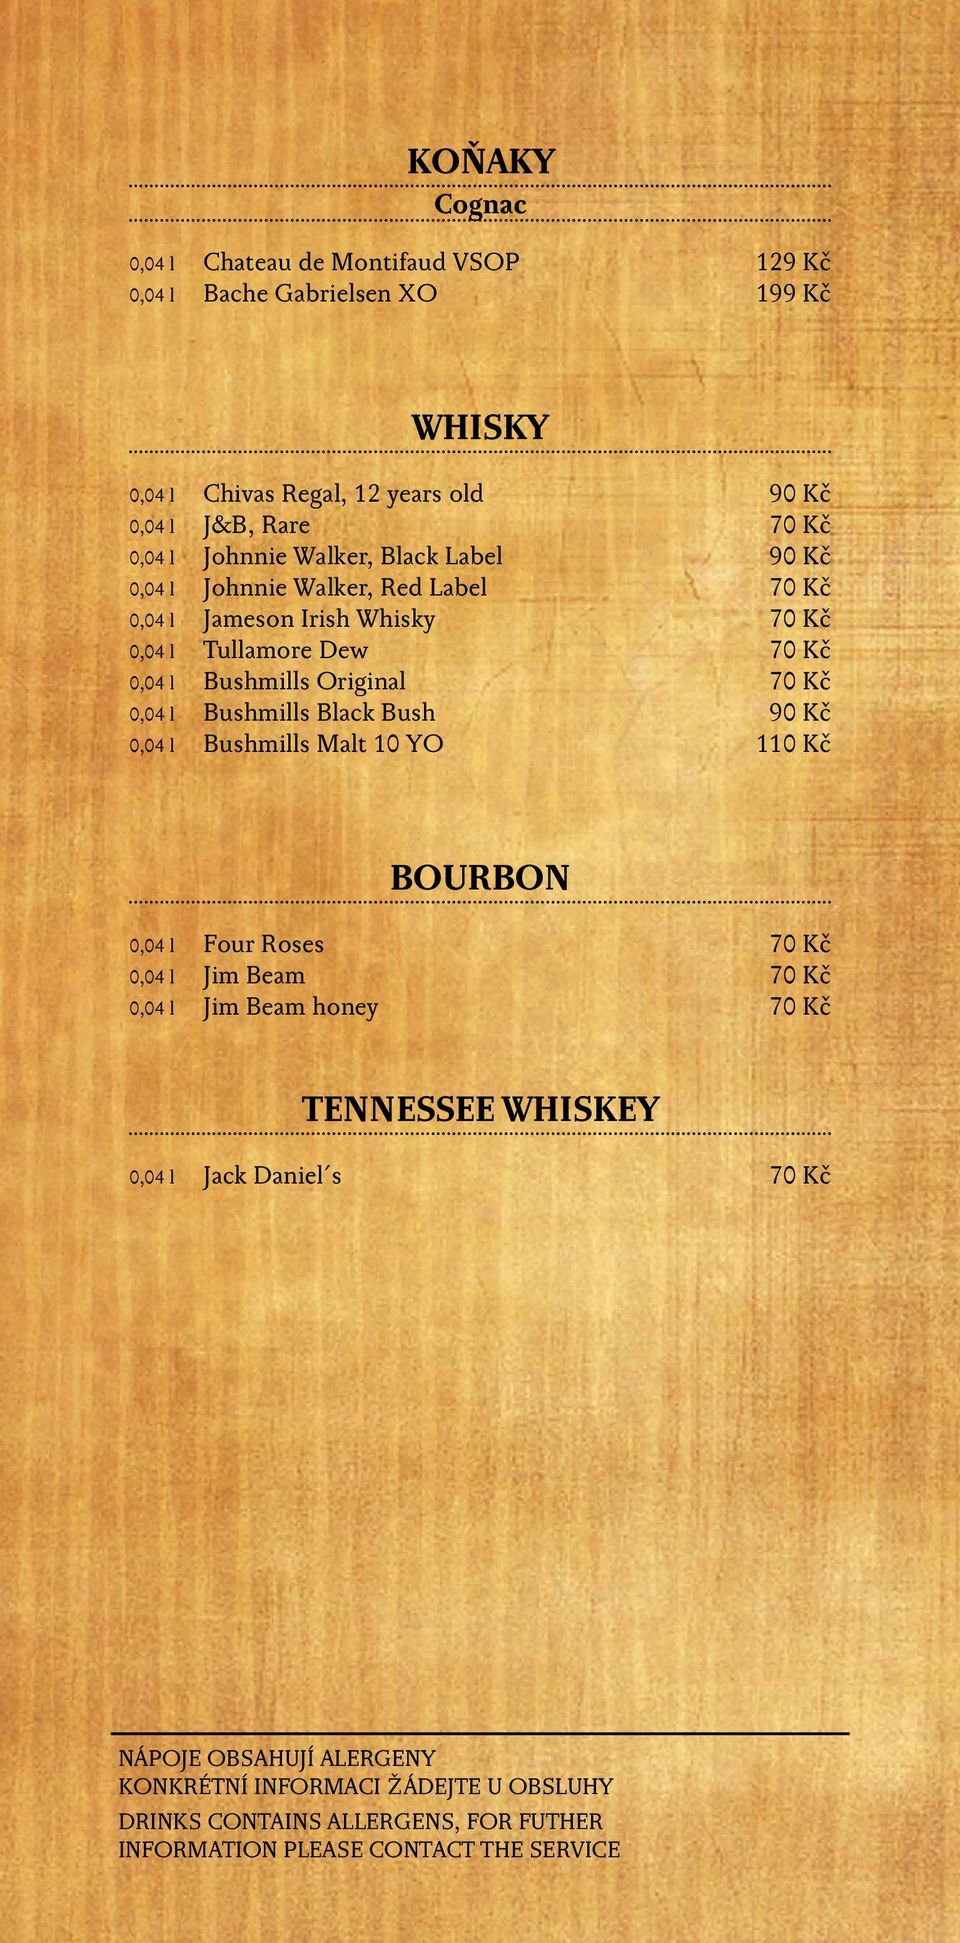 Whisky 70 Kč 0,04 l Tullamore Dew 70 Kč 0,04 l Bushmills Original 70 Kč 0,04 l Bushmills Black Bush 90 Kč 0,04 l Bushmills Malt 10